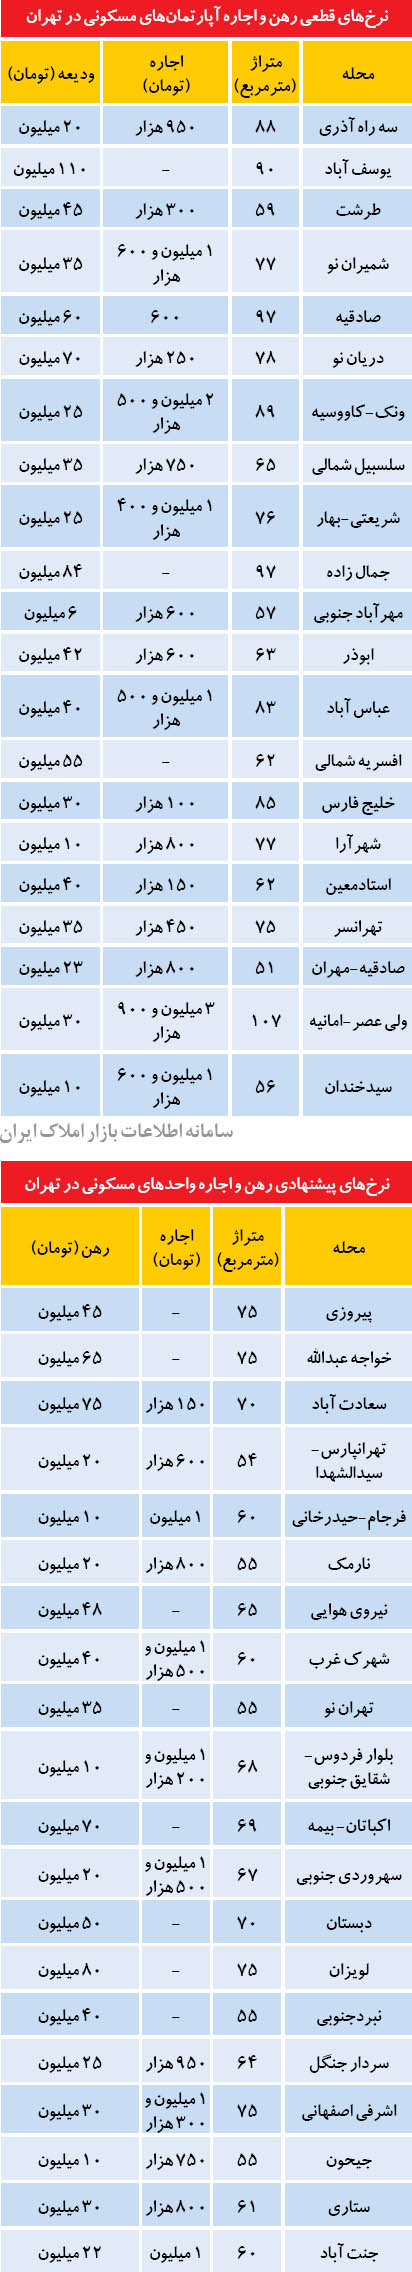 نرخ اجاره مسکن در نقاط مختلف تهران (+جدول)